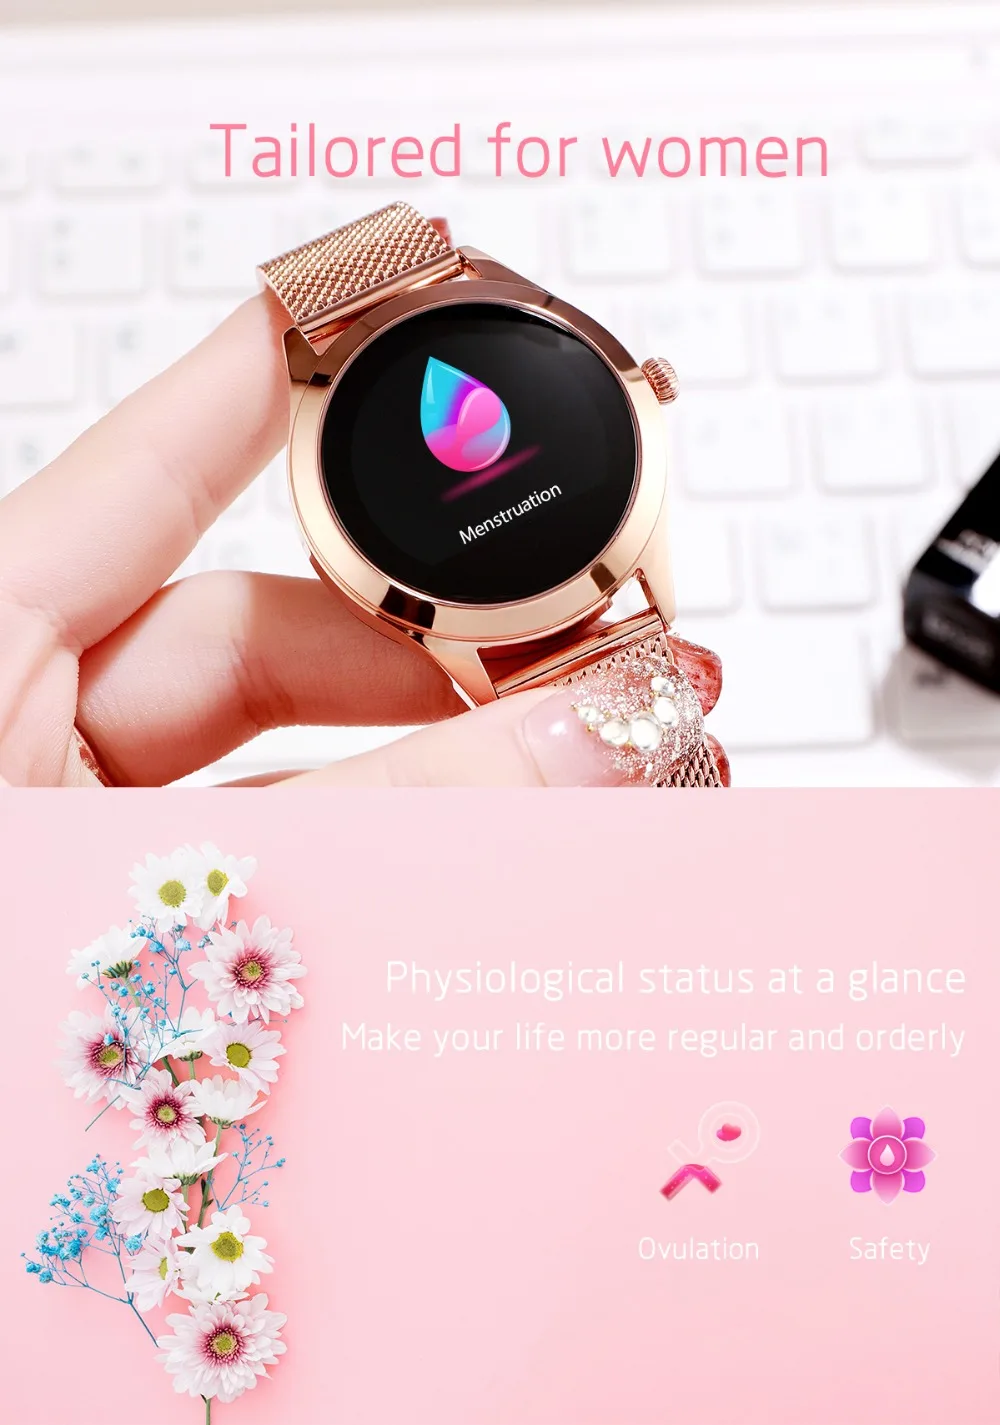 Умные женские часы, кровяное давление, Bluetooth, смарт-браслет, фитнес-браслет с шагомером, браслет для IOS, Android, одежда